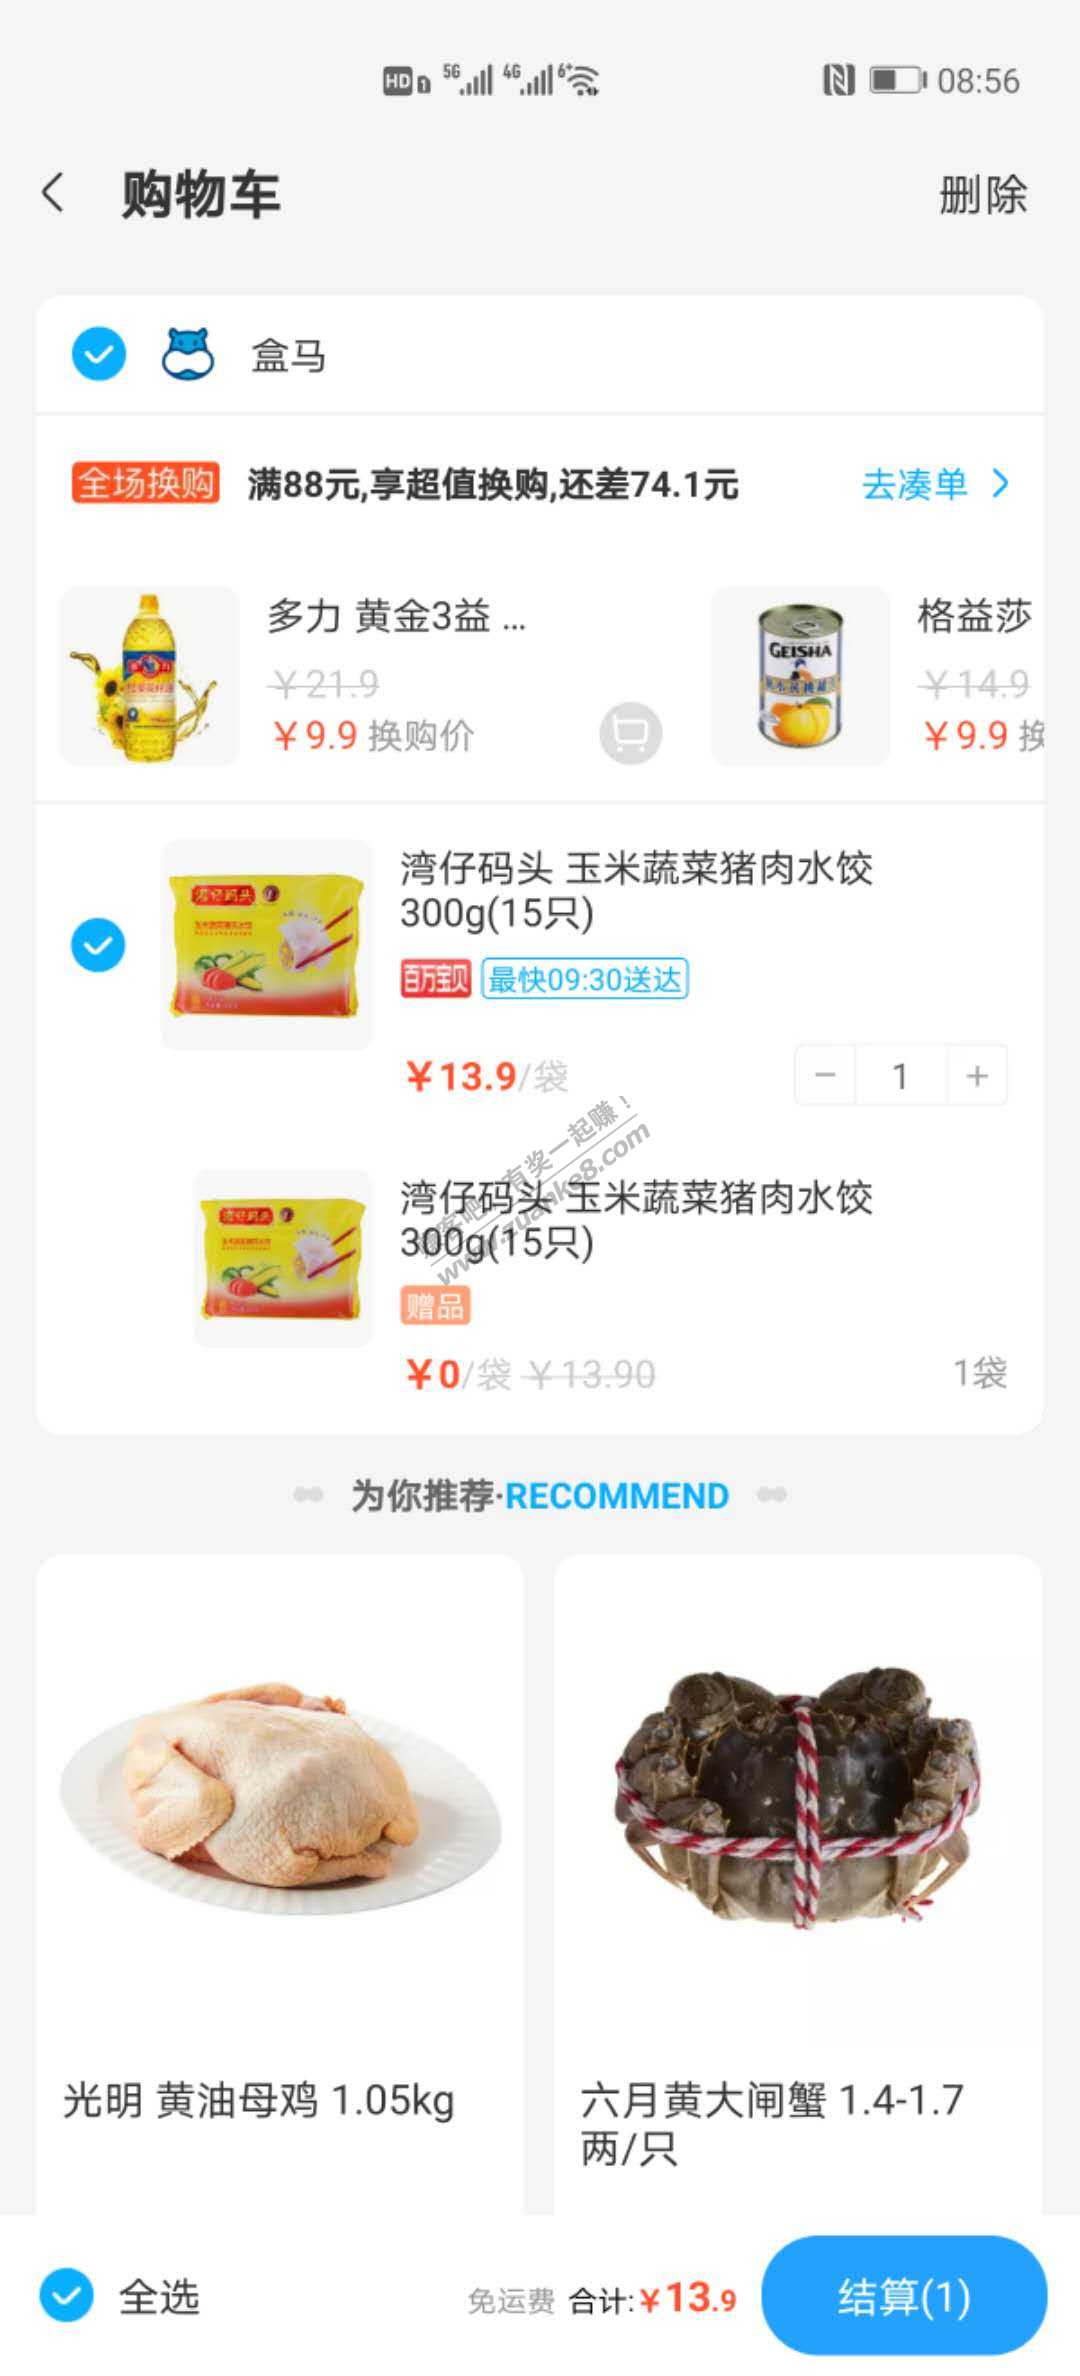 上海盒马湾仔码头水饺好价-惠小助(52huixz.com)